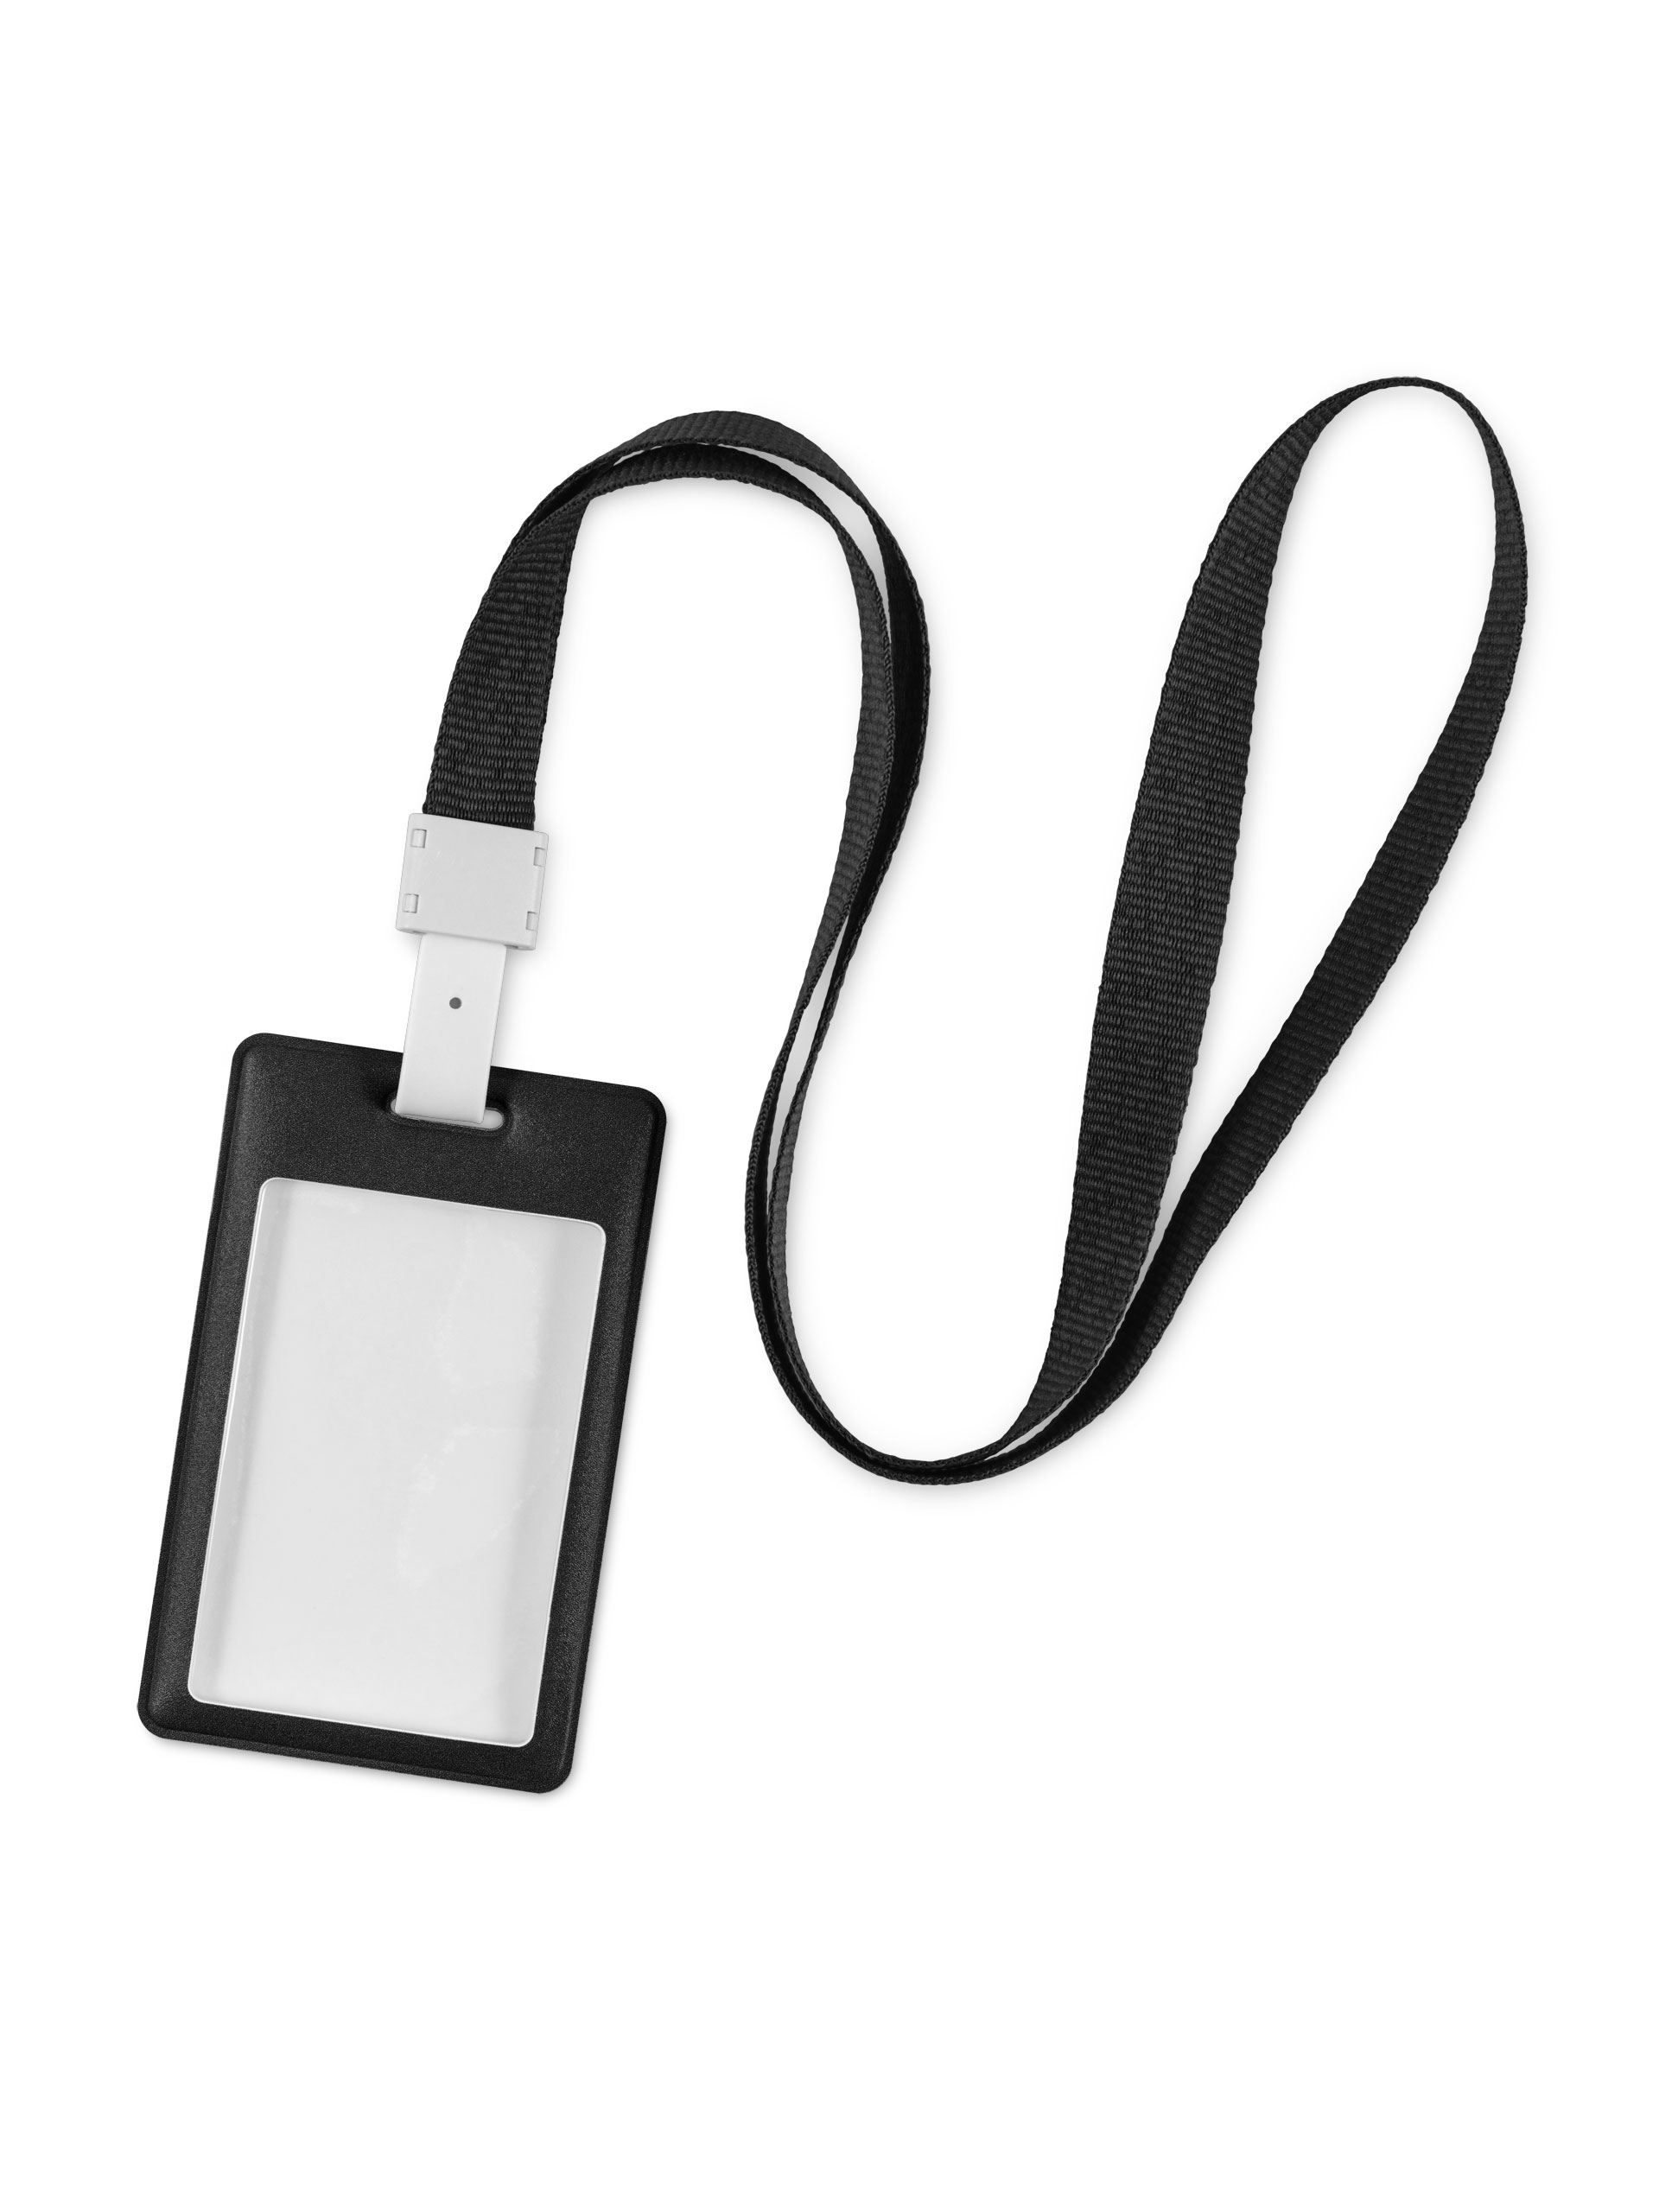 фото Лента для бейджа / держатель для бейджа с карманом для карты / пропуска flexpocket черная